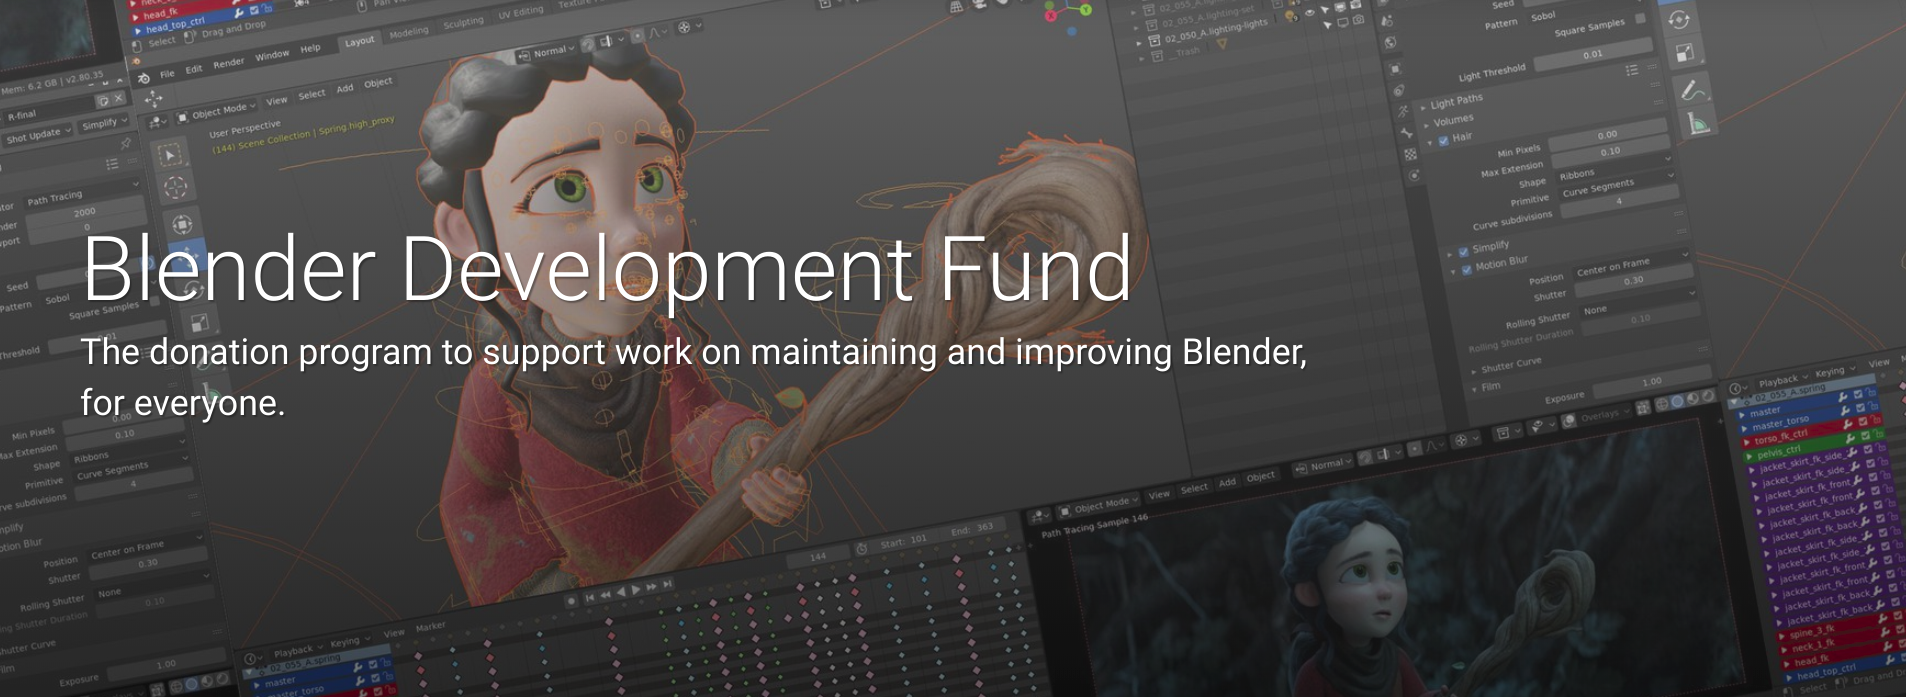 Adobe 加入 Blender 基金会